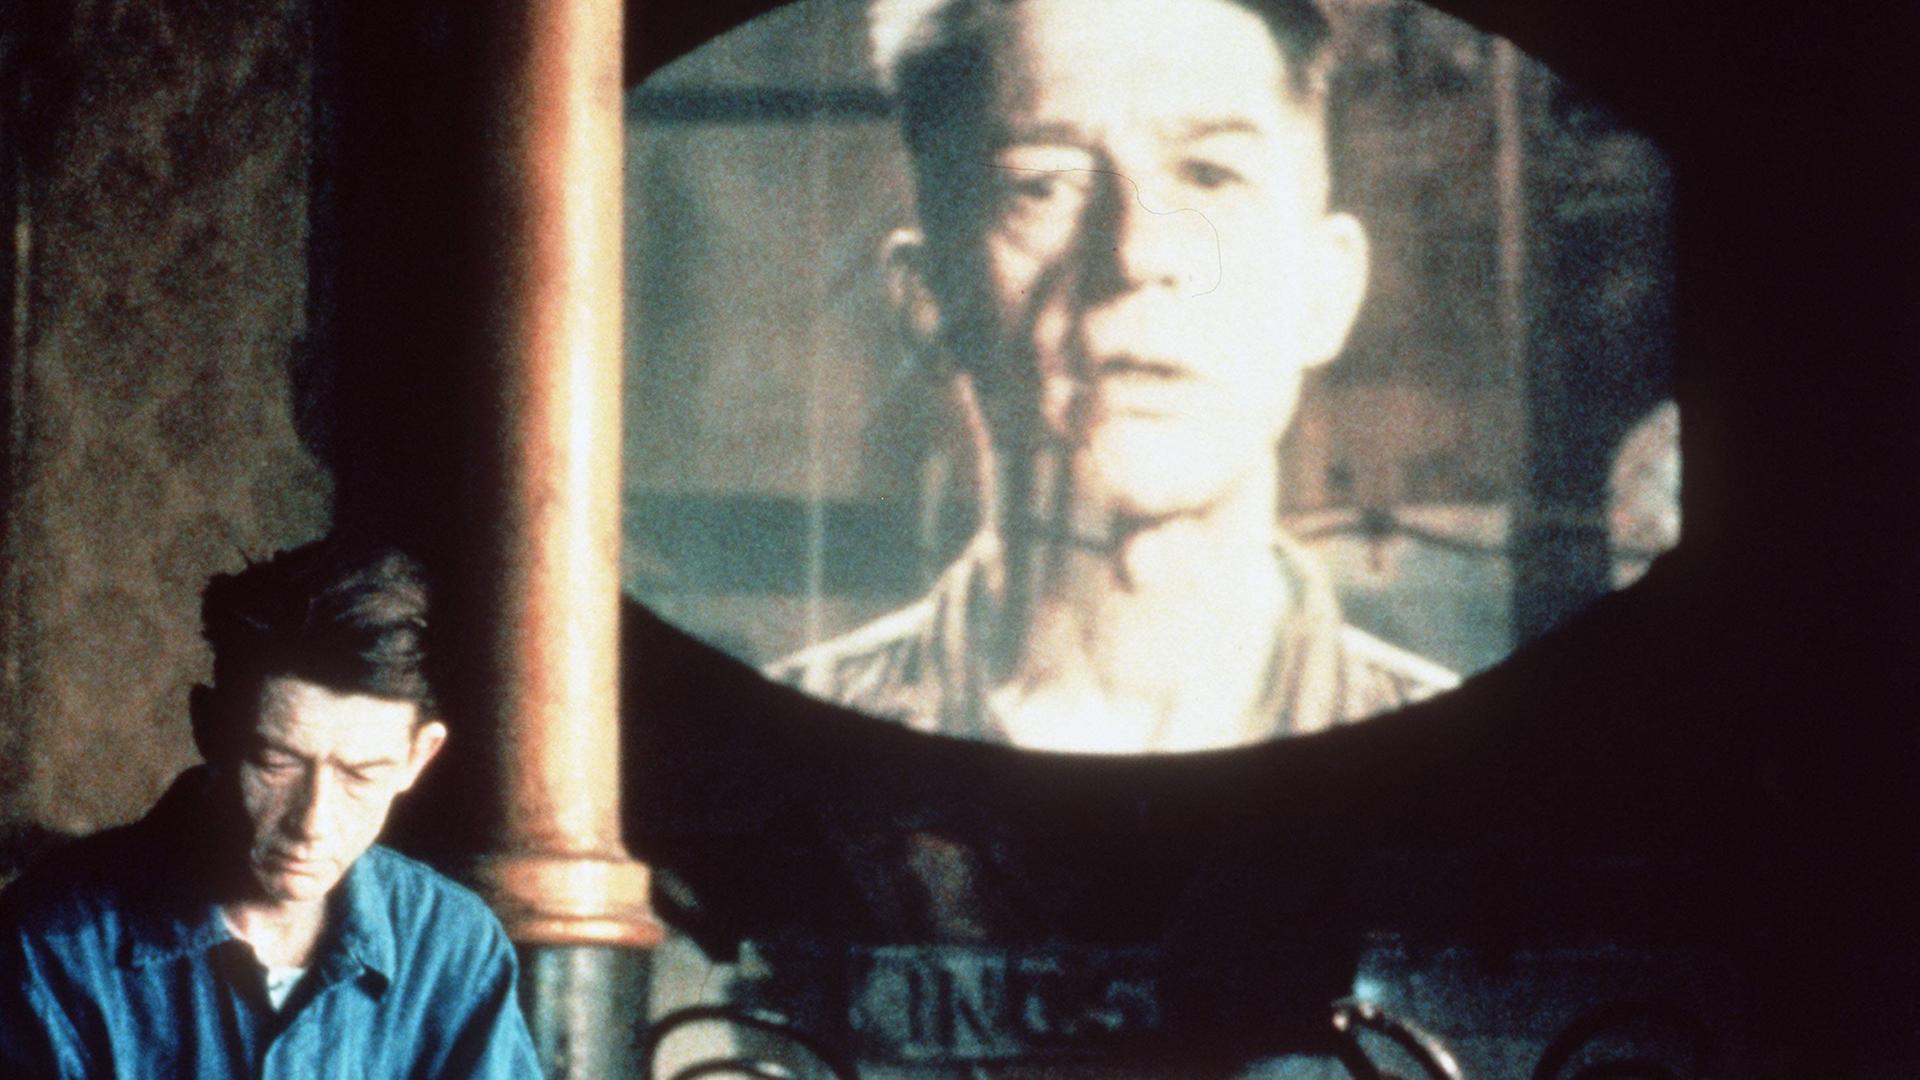 John Hurt in einer Szene des Films "1984" nach George Orwell (Regie: Michael Radford)